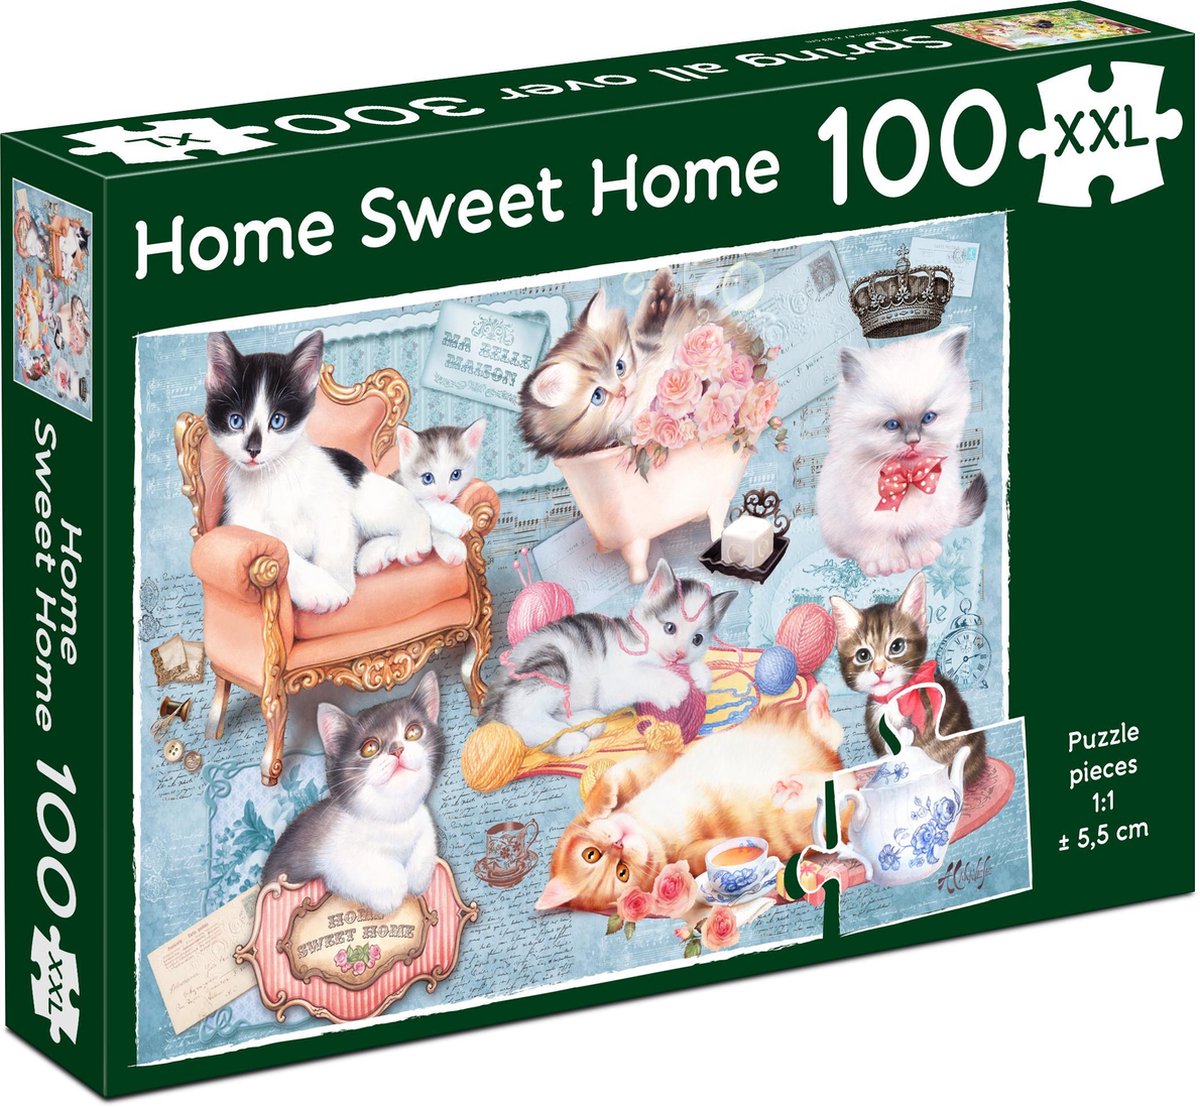 XXL Puzzel - Home Sweet Home (100 XXL) (INTRODUCTIE AANBIEDING)